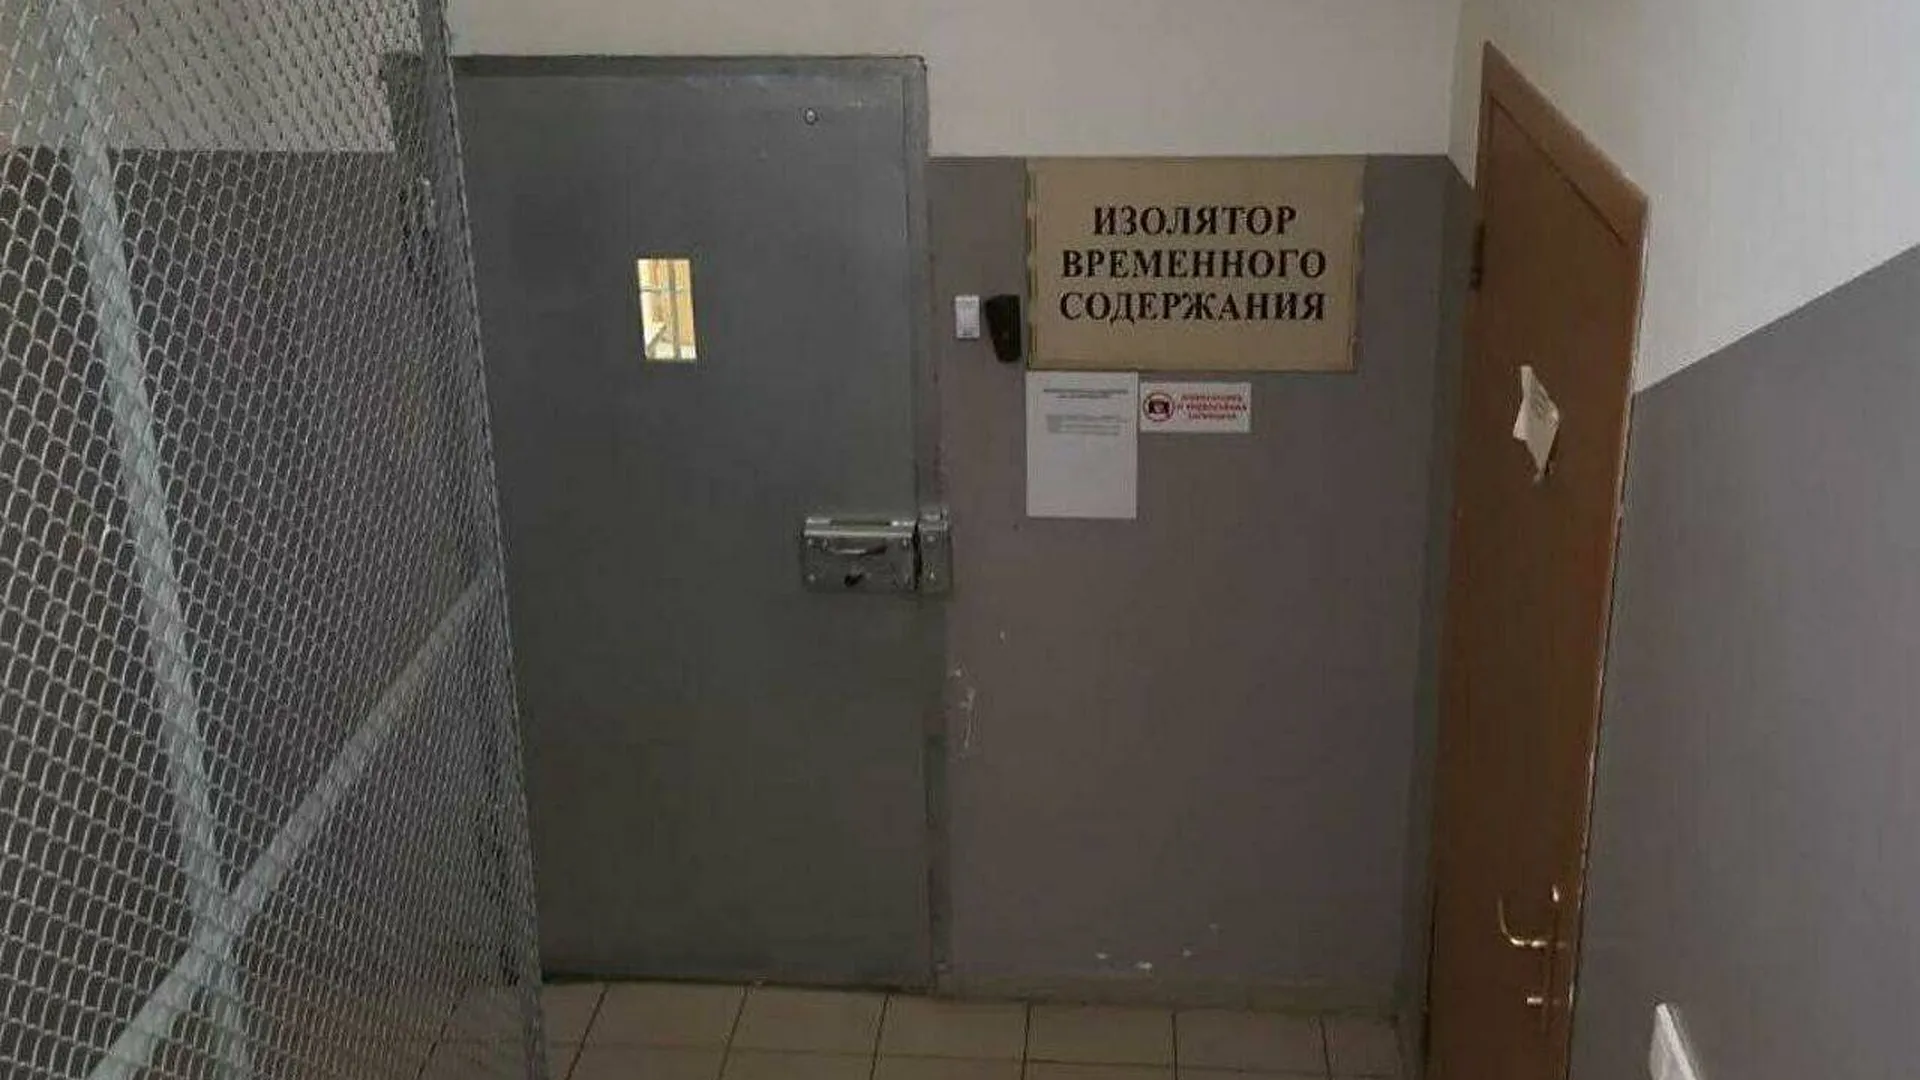 СК Подмосковья: сотрудники ИВС в Истре не помогали заключенным сбежать